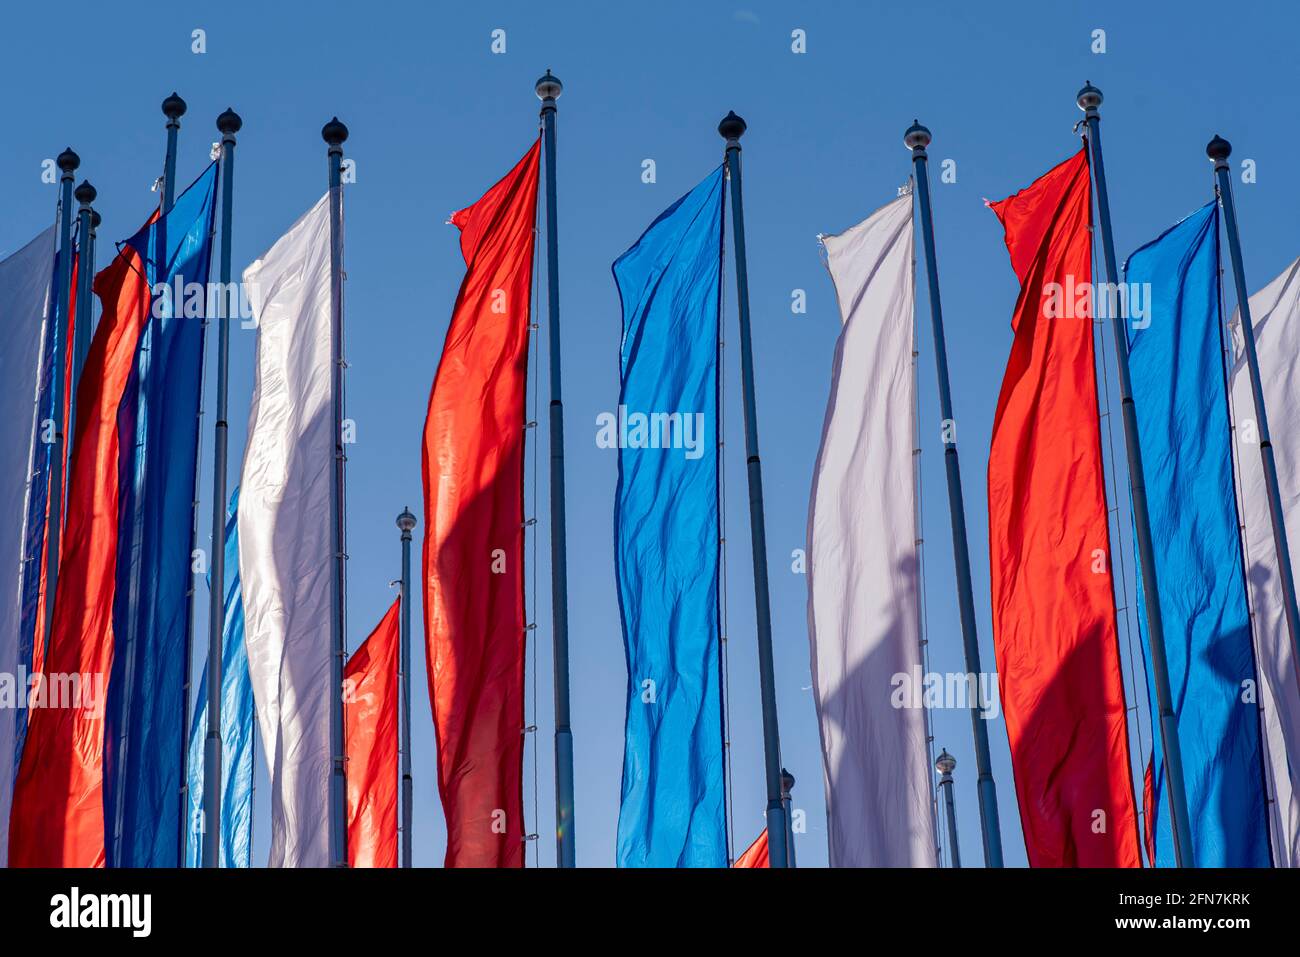 Drapeaux blancs, bleus, rouges en tant que drapeau russe au total. Imitation de drapeau de la Russie dans une rue pendant la chaude journée ensoleillée. Banque D'Images